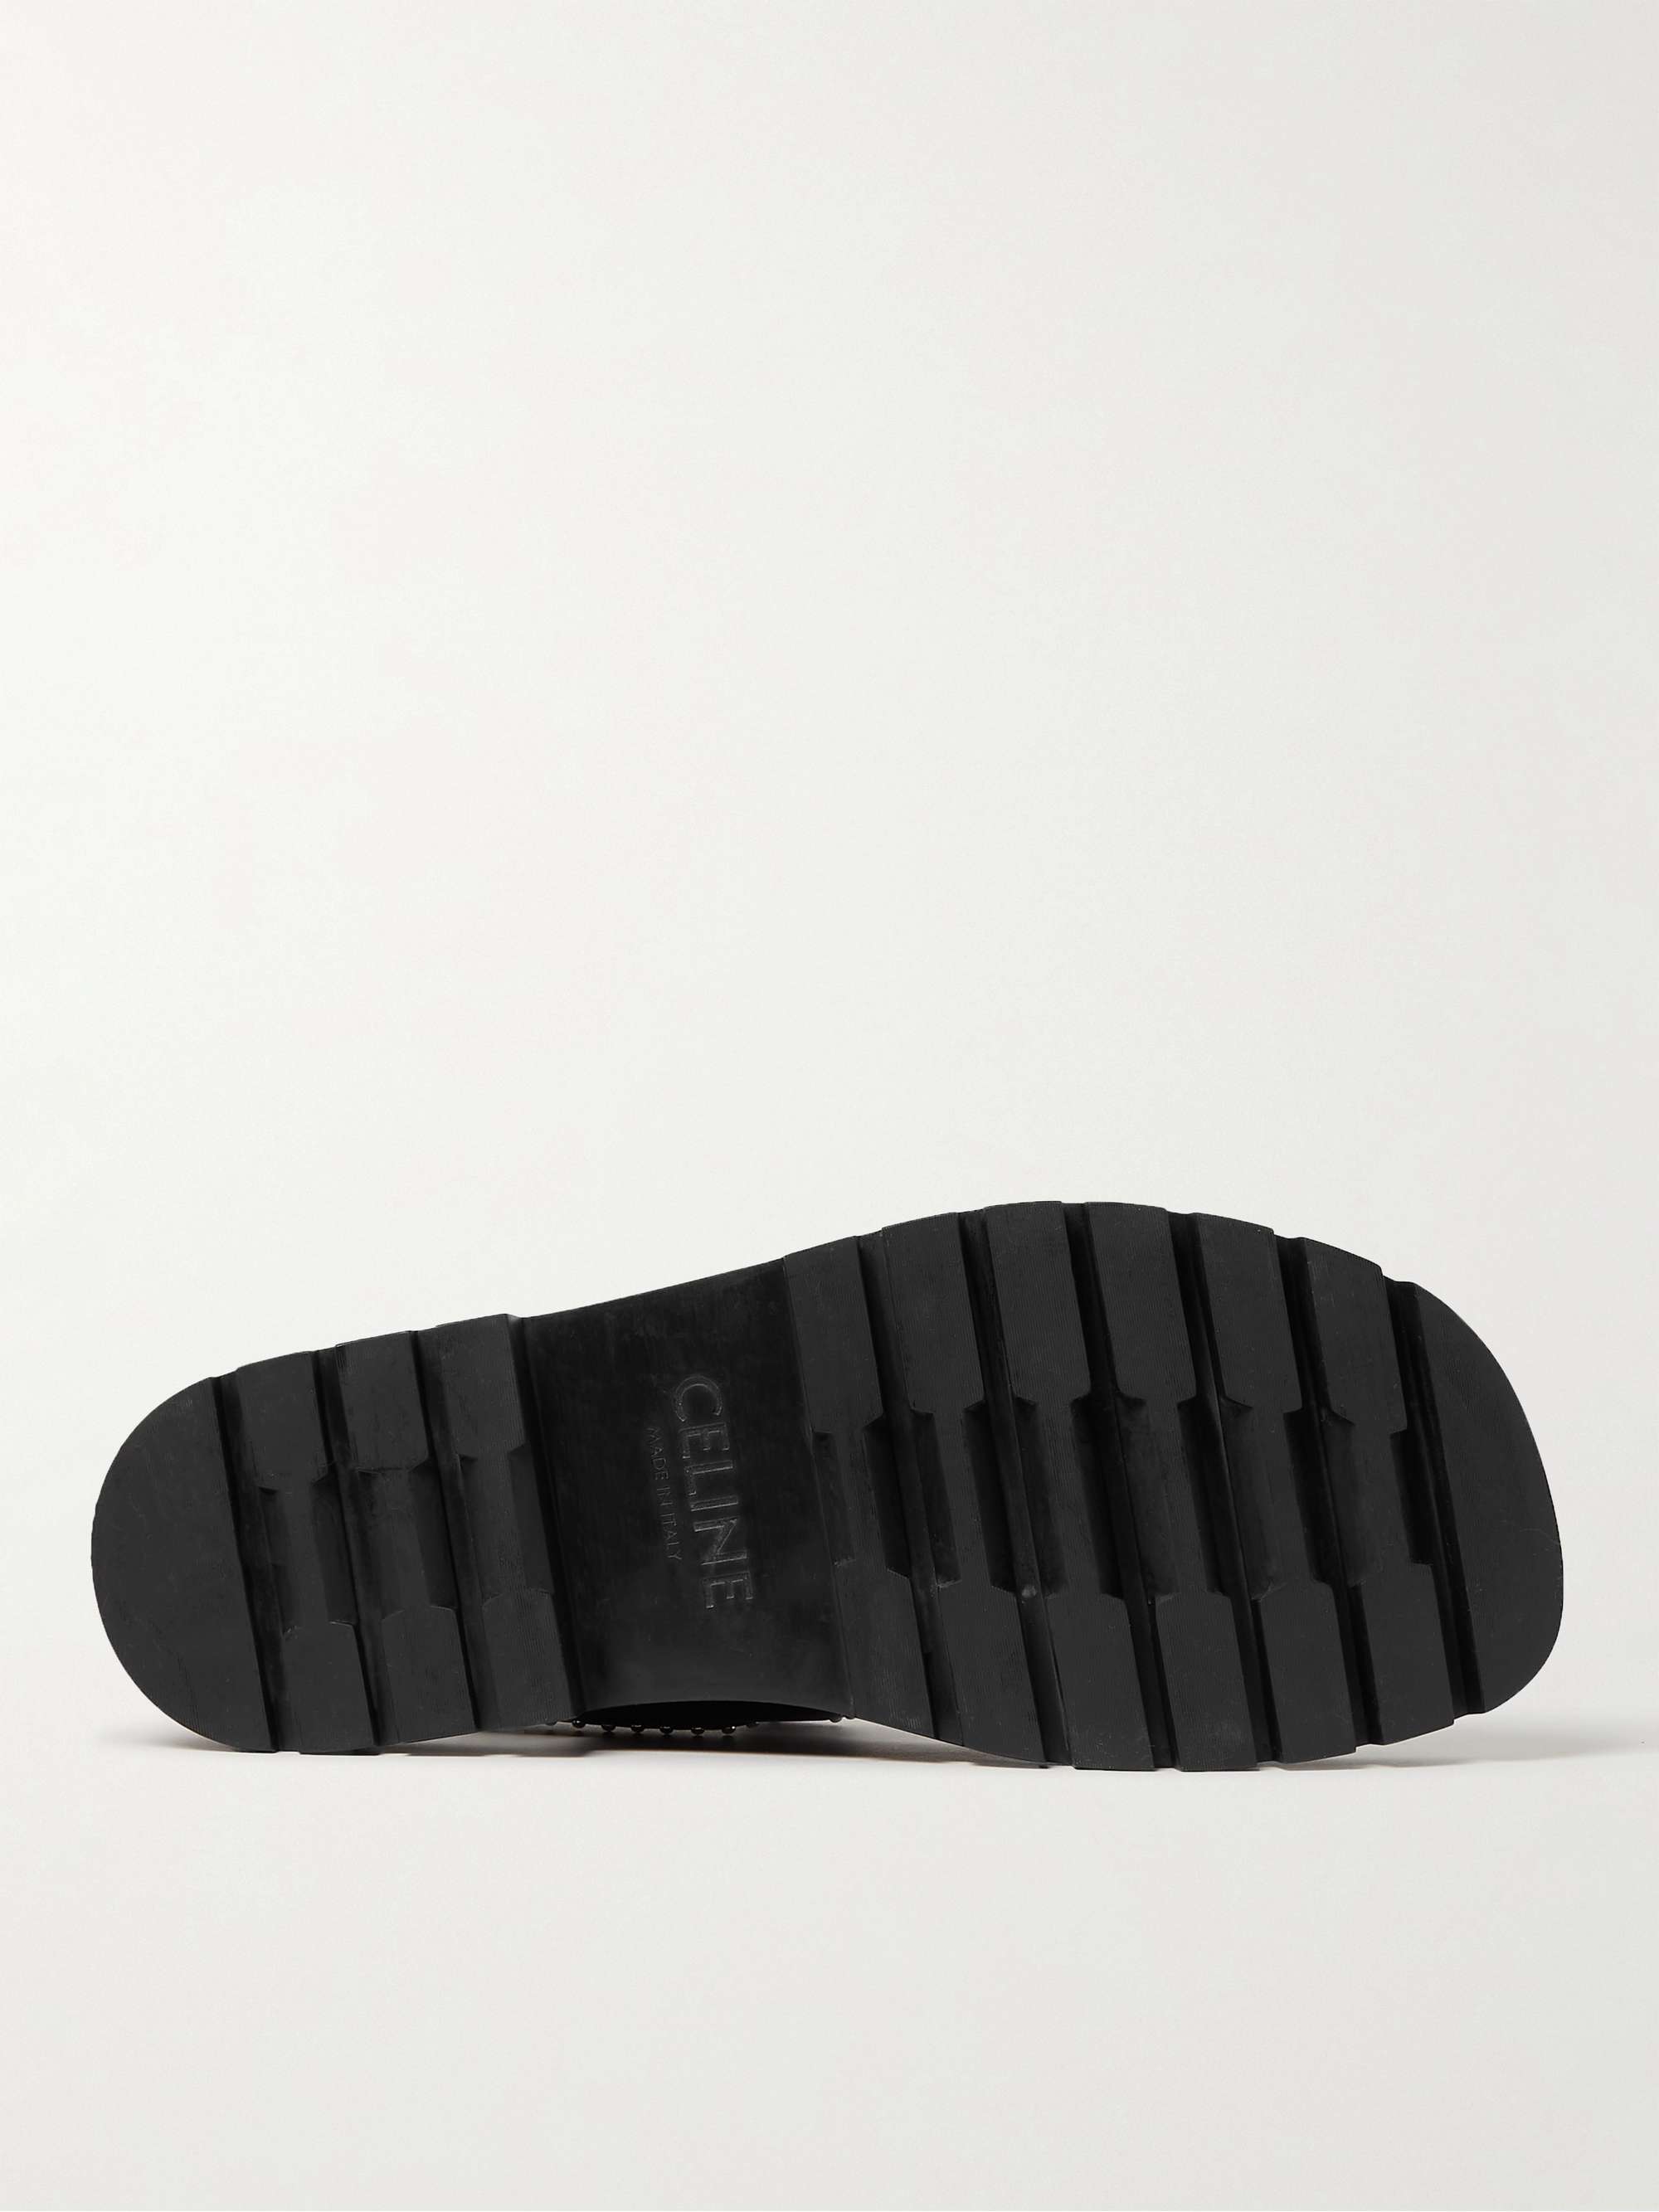 CELINE HOMME Studded Logo-Print Leather Sandals